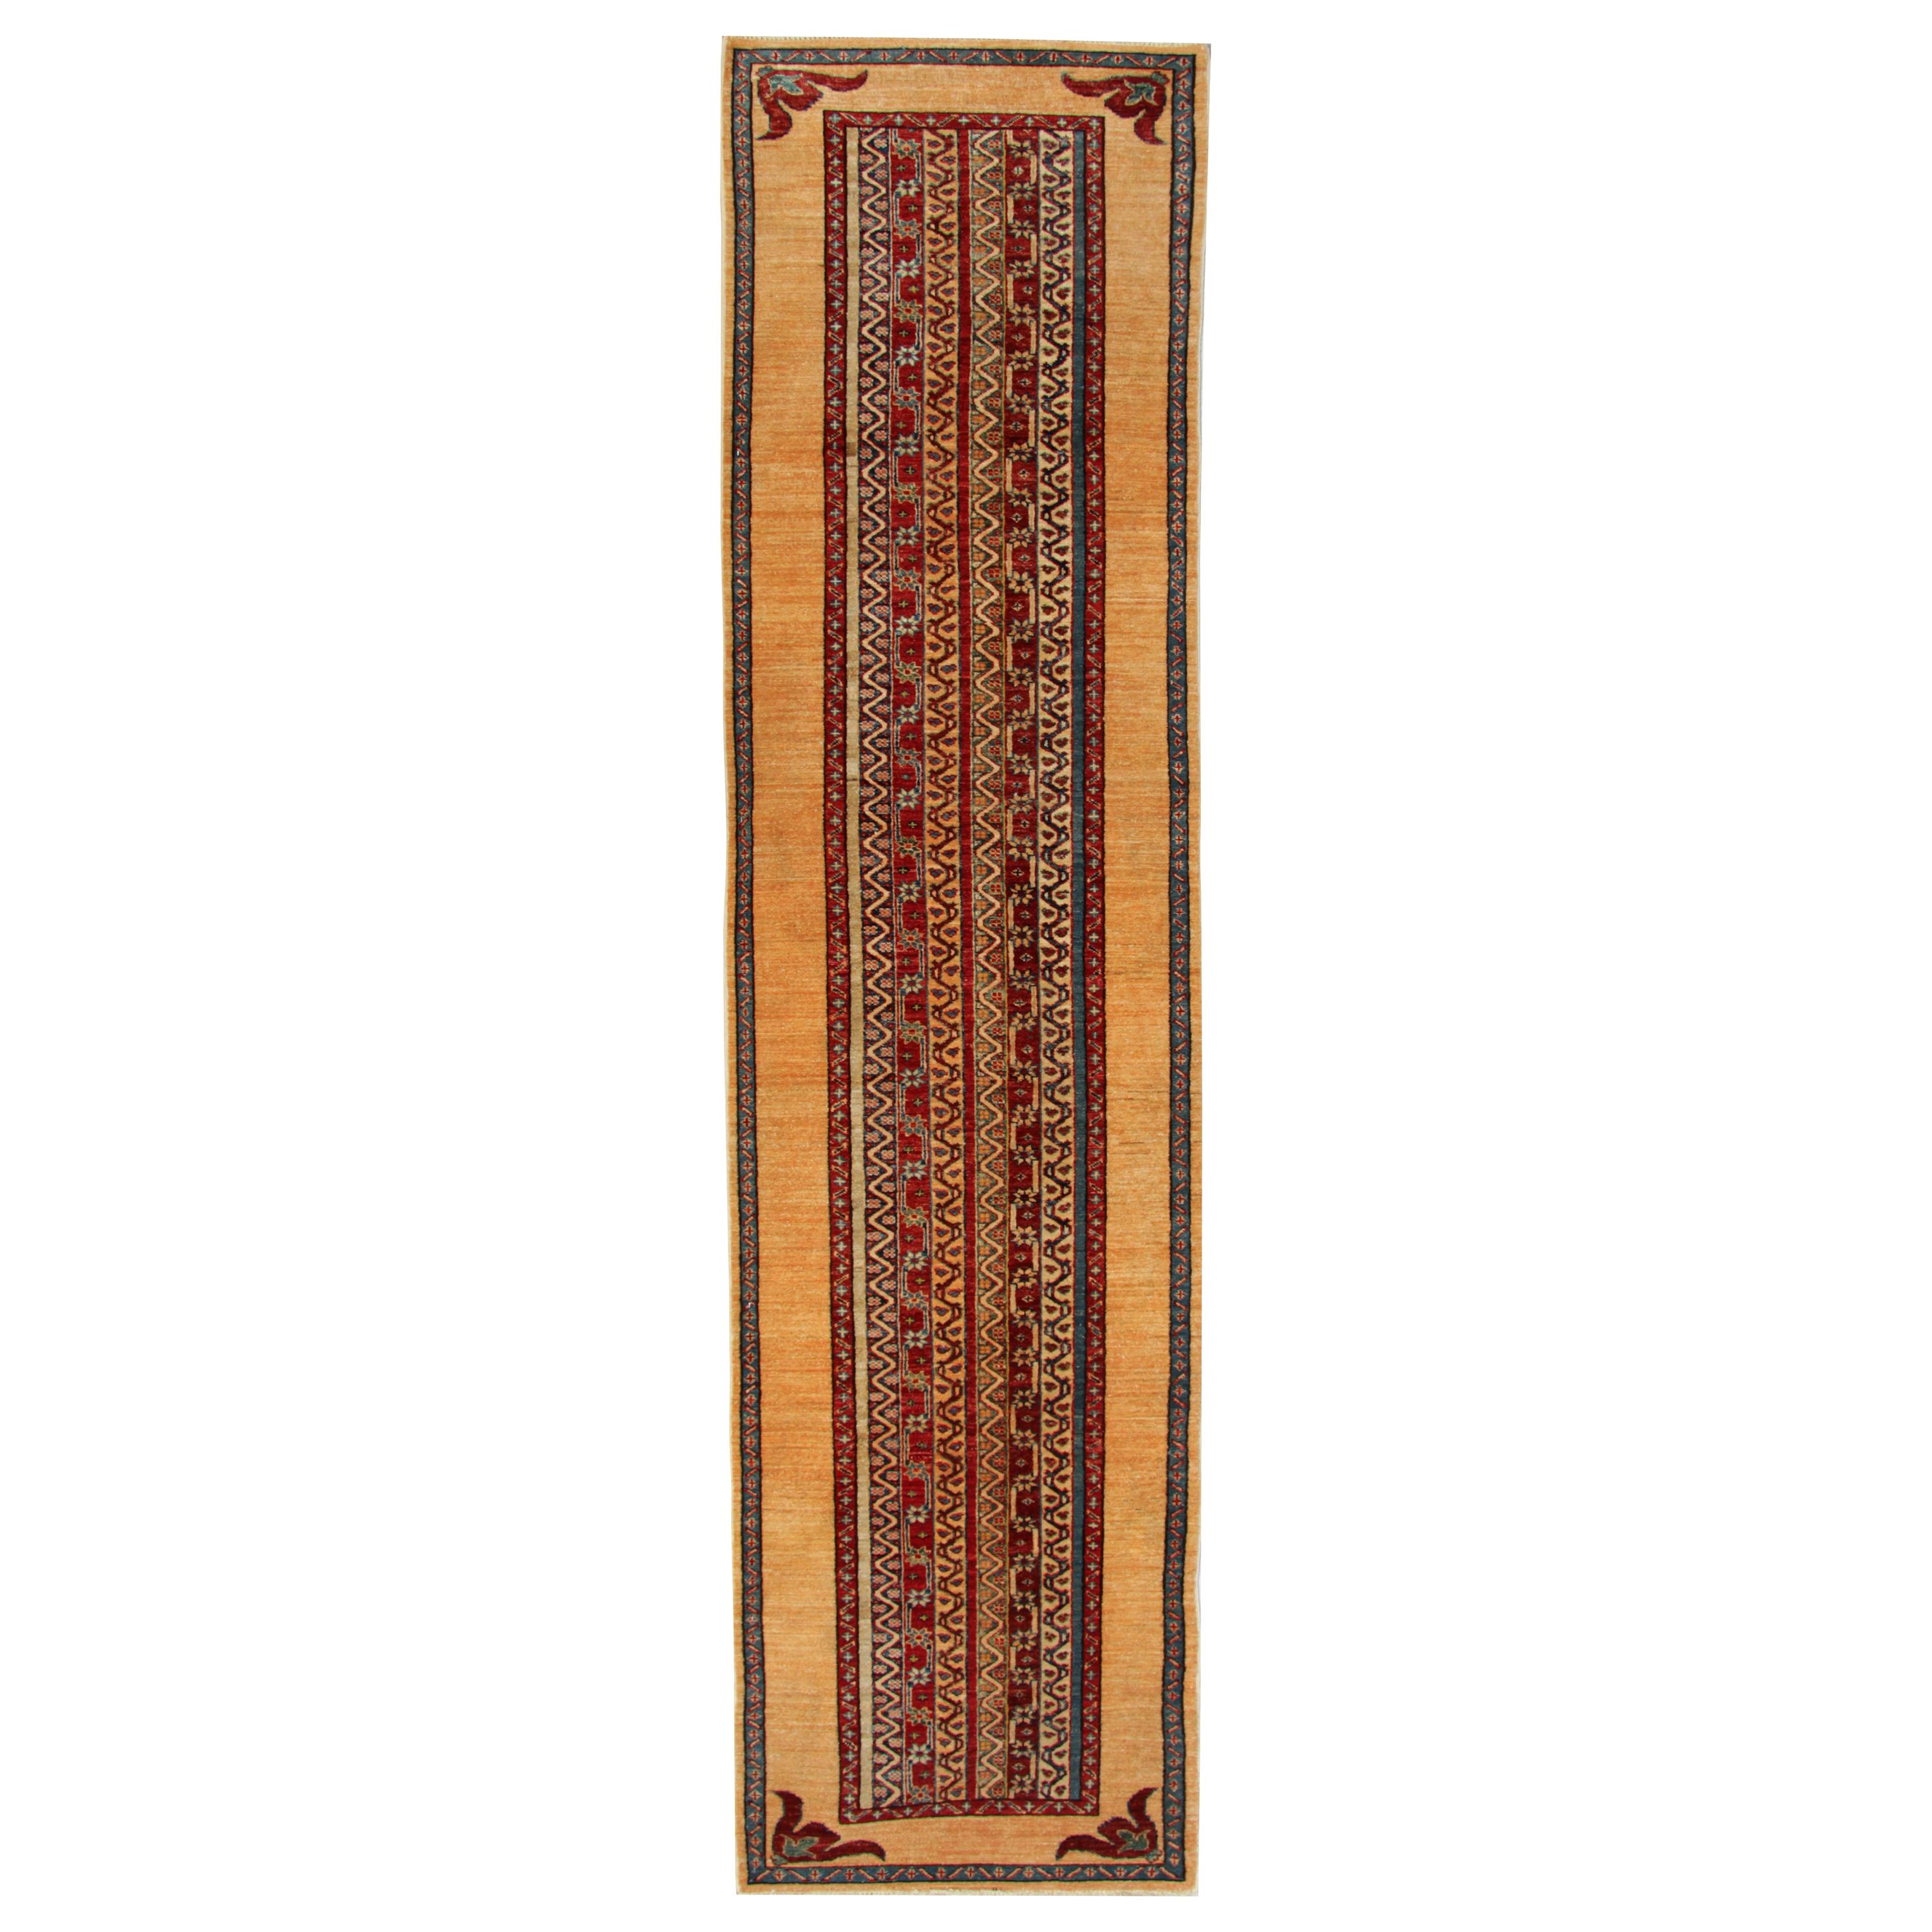 Handmade Runner Rug Traditional Kazak Carpet Rug Yellow Striped Runner